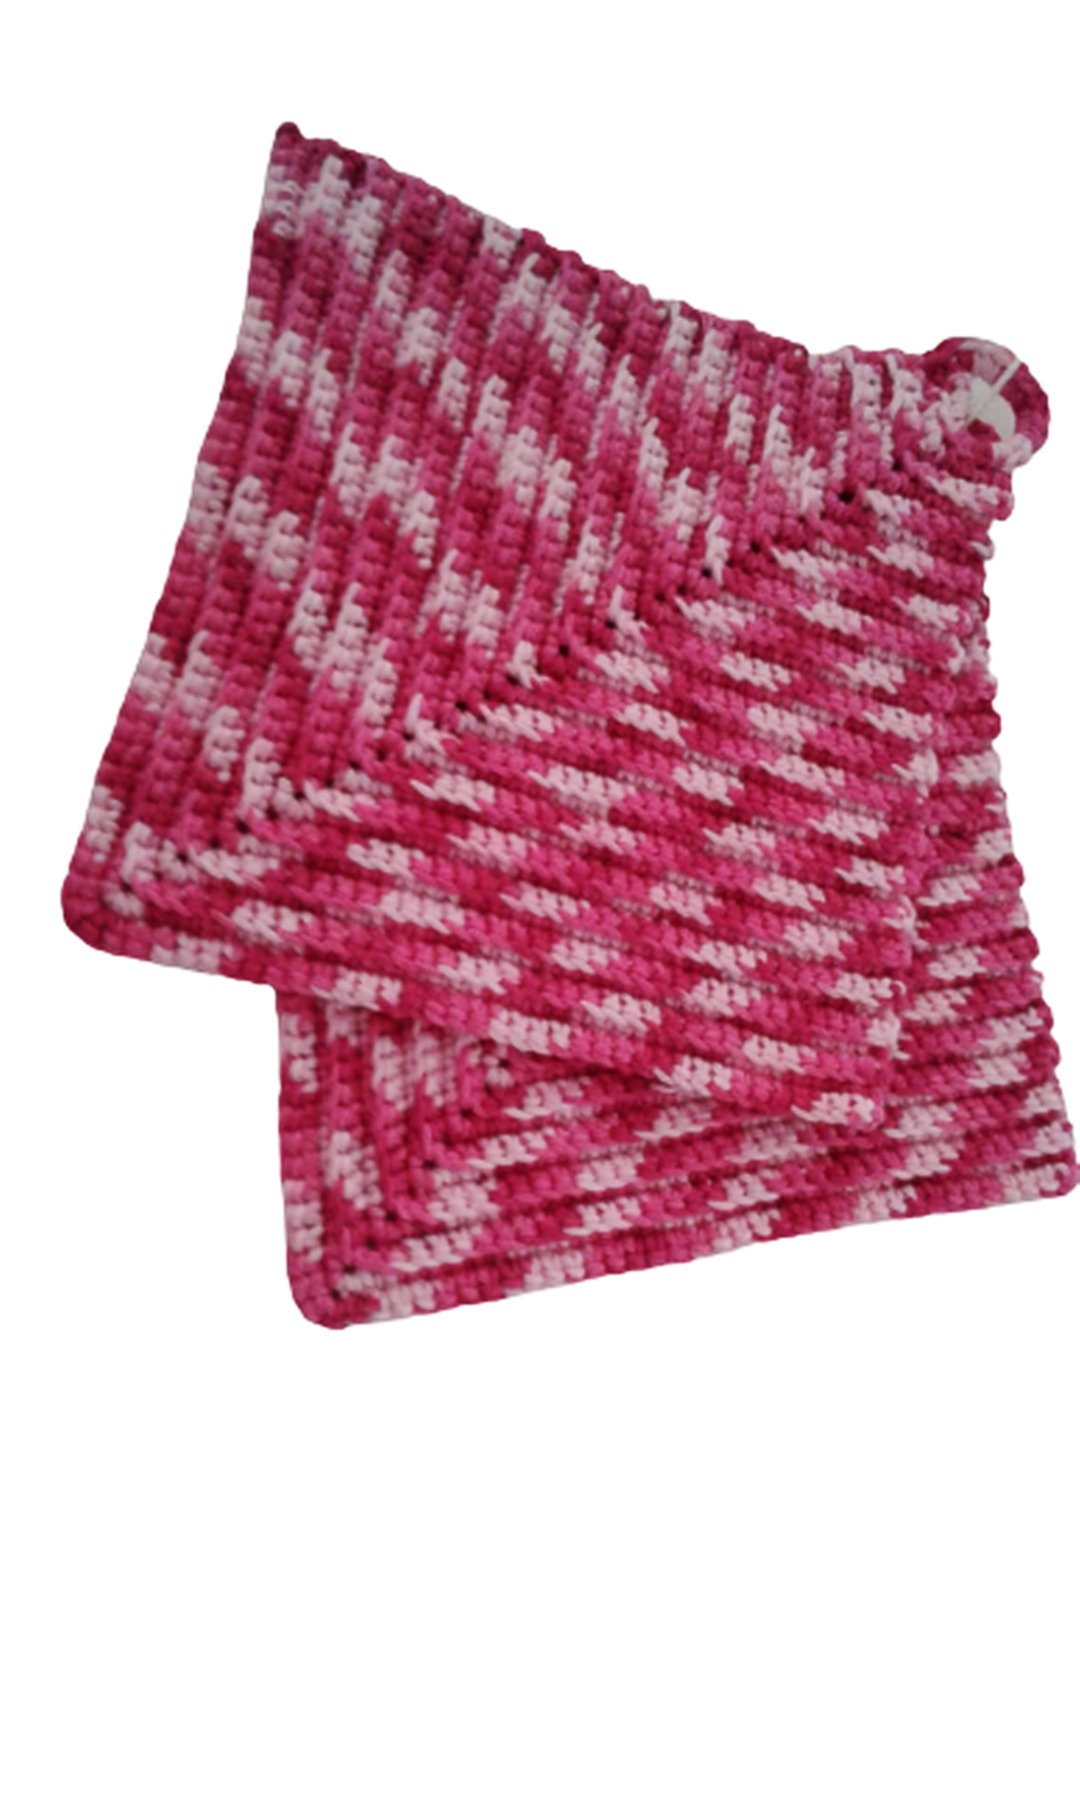 Topflappen klassischer Stil ca 19 x 19 cm - 100 Baumwolle in pink und natur Nr 107 3